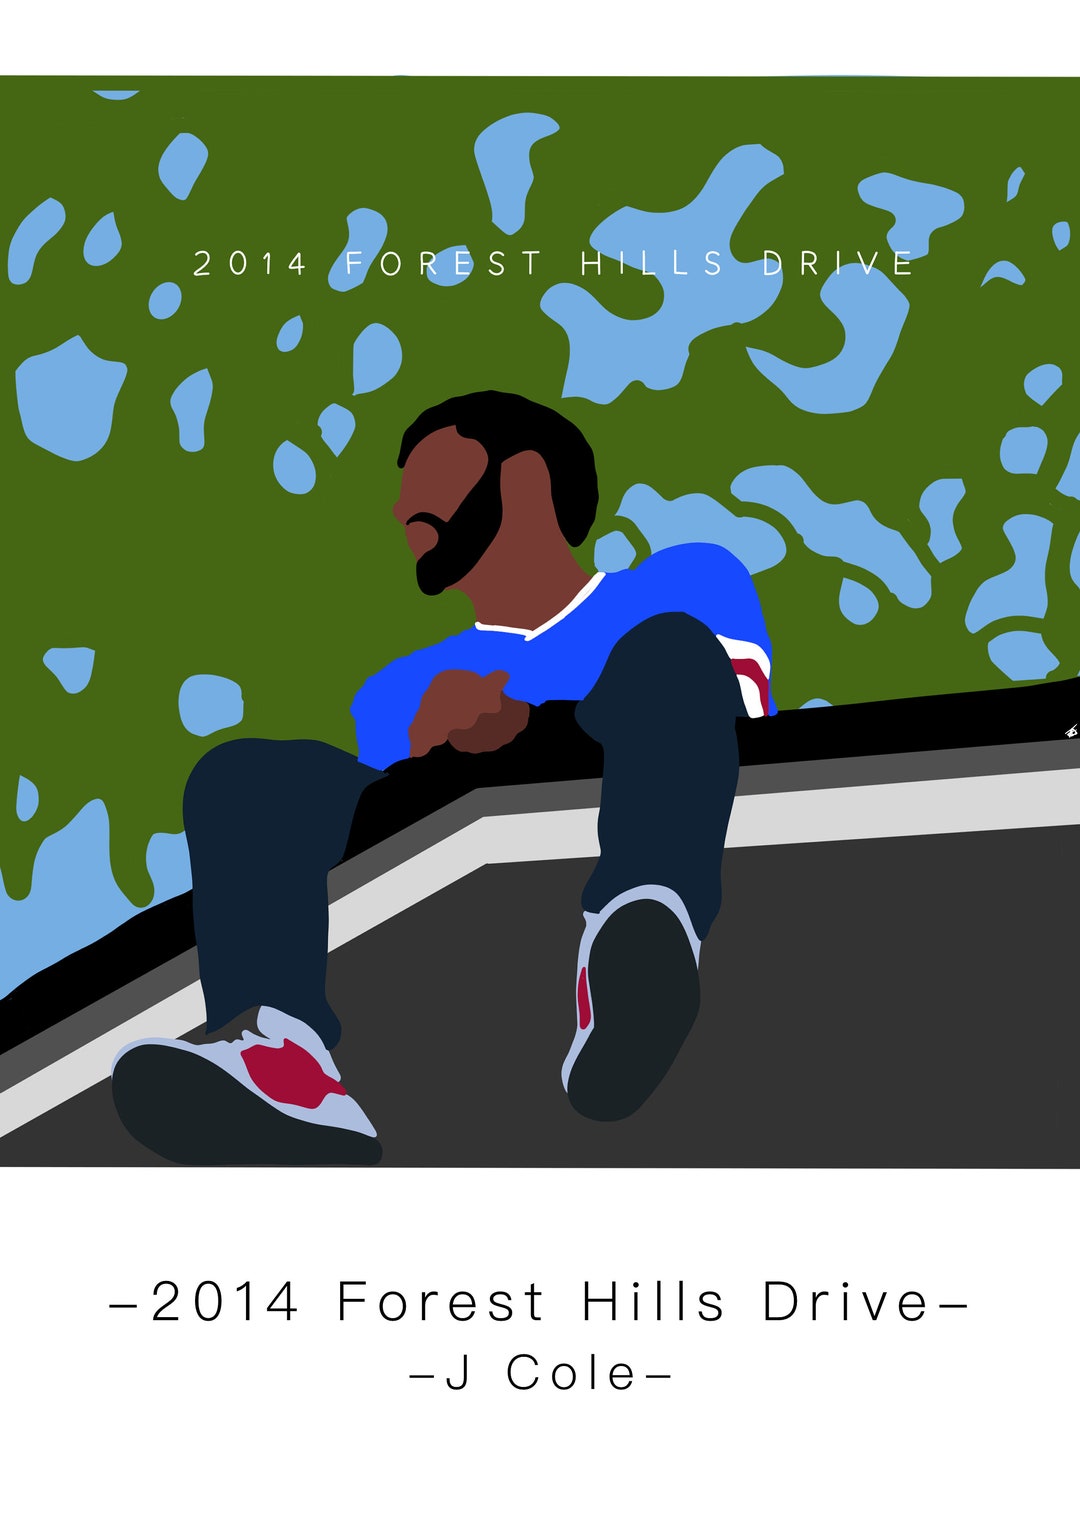 J. Cole - 2014 Forest Hills Drive ALBUM REVIEW 